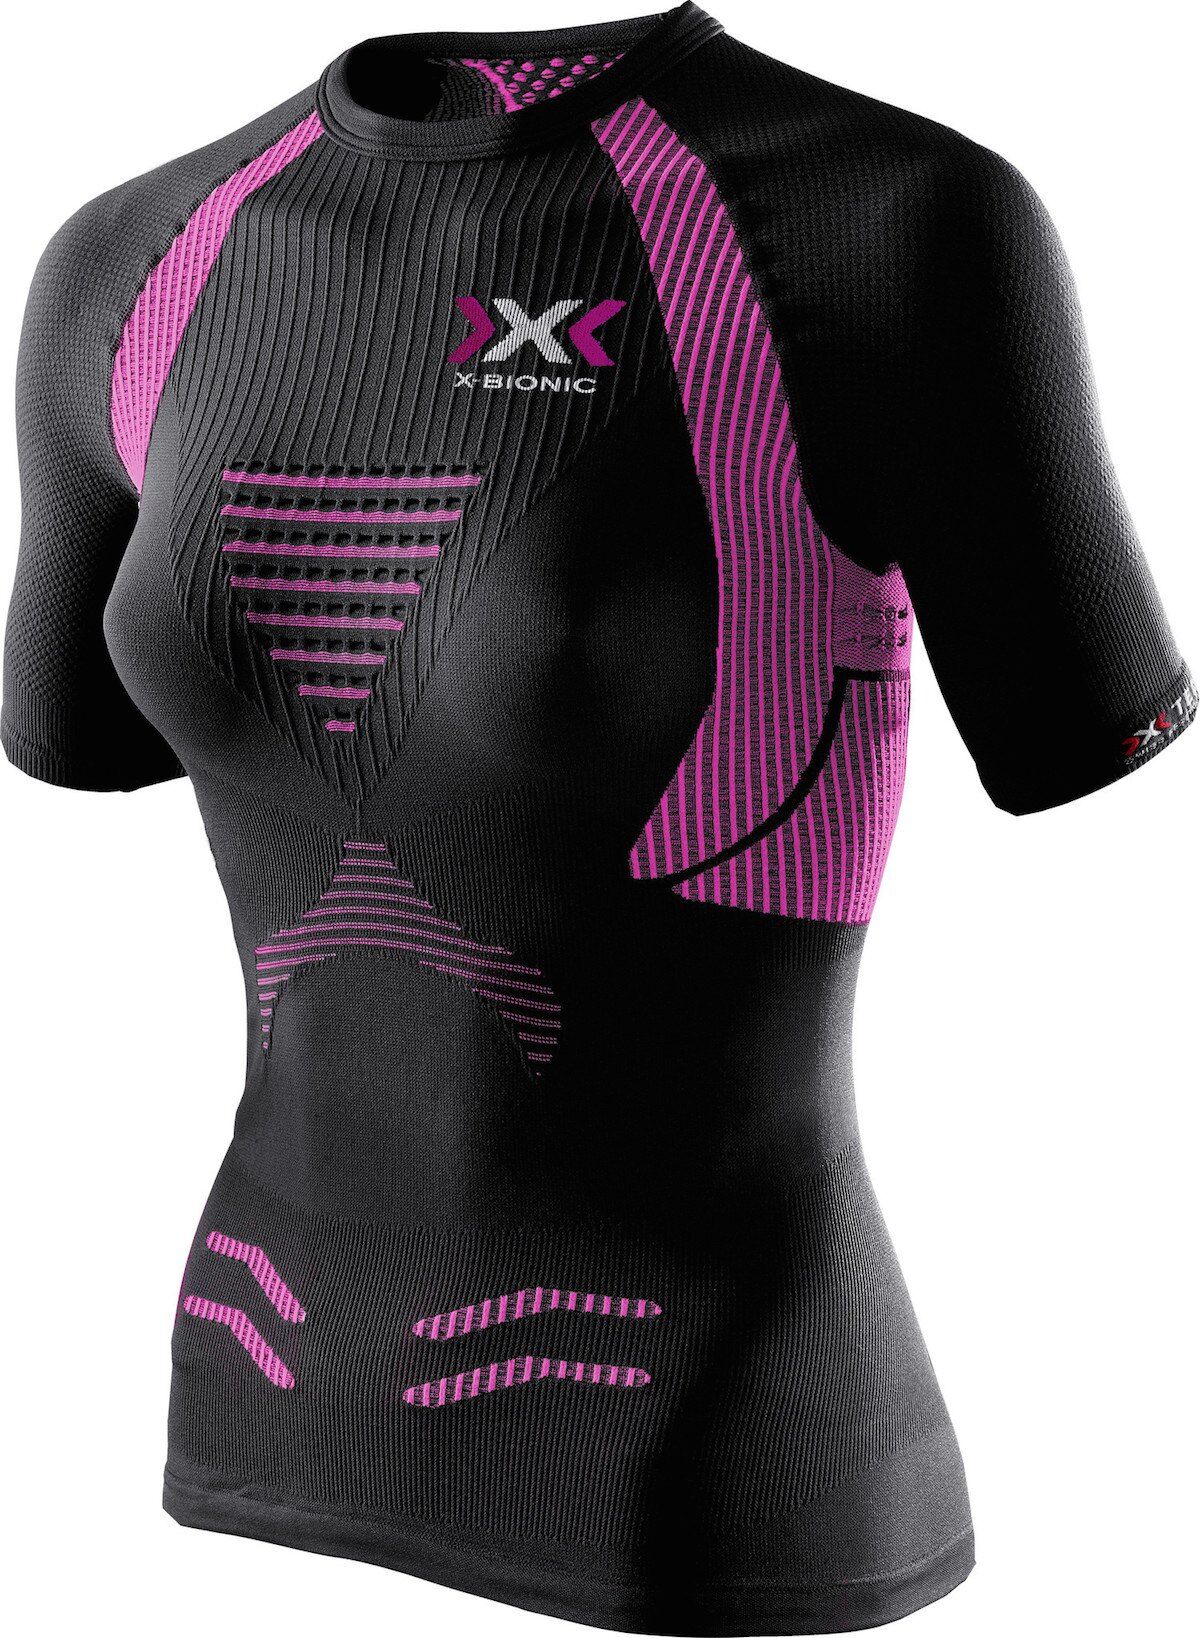 X-Bionic - The Trick - Camiseta - Mujer